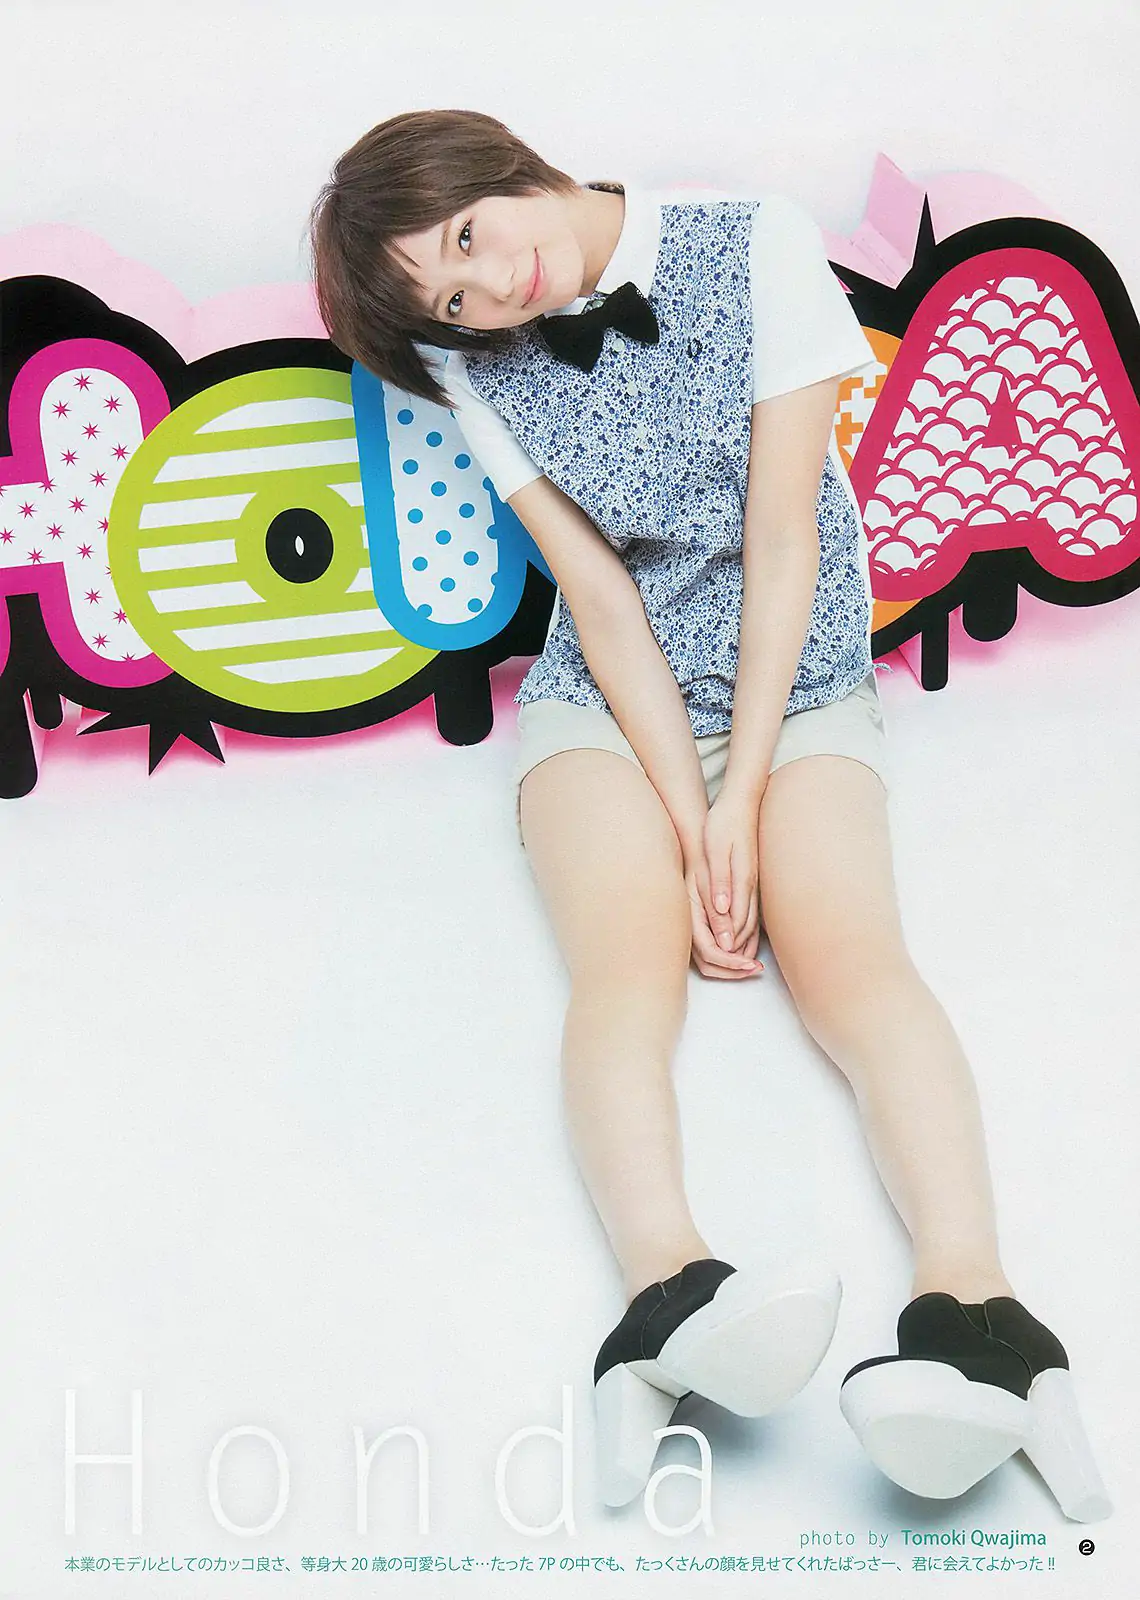 本田翼 杉本有美 48グループ [Weekly Young Jump] 2013年No.17 写真杂志